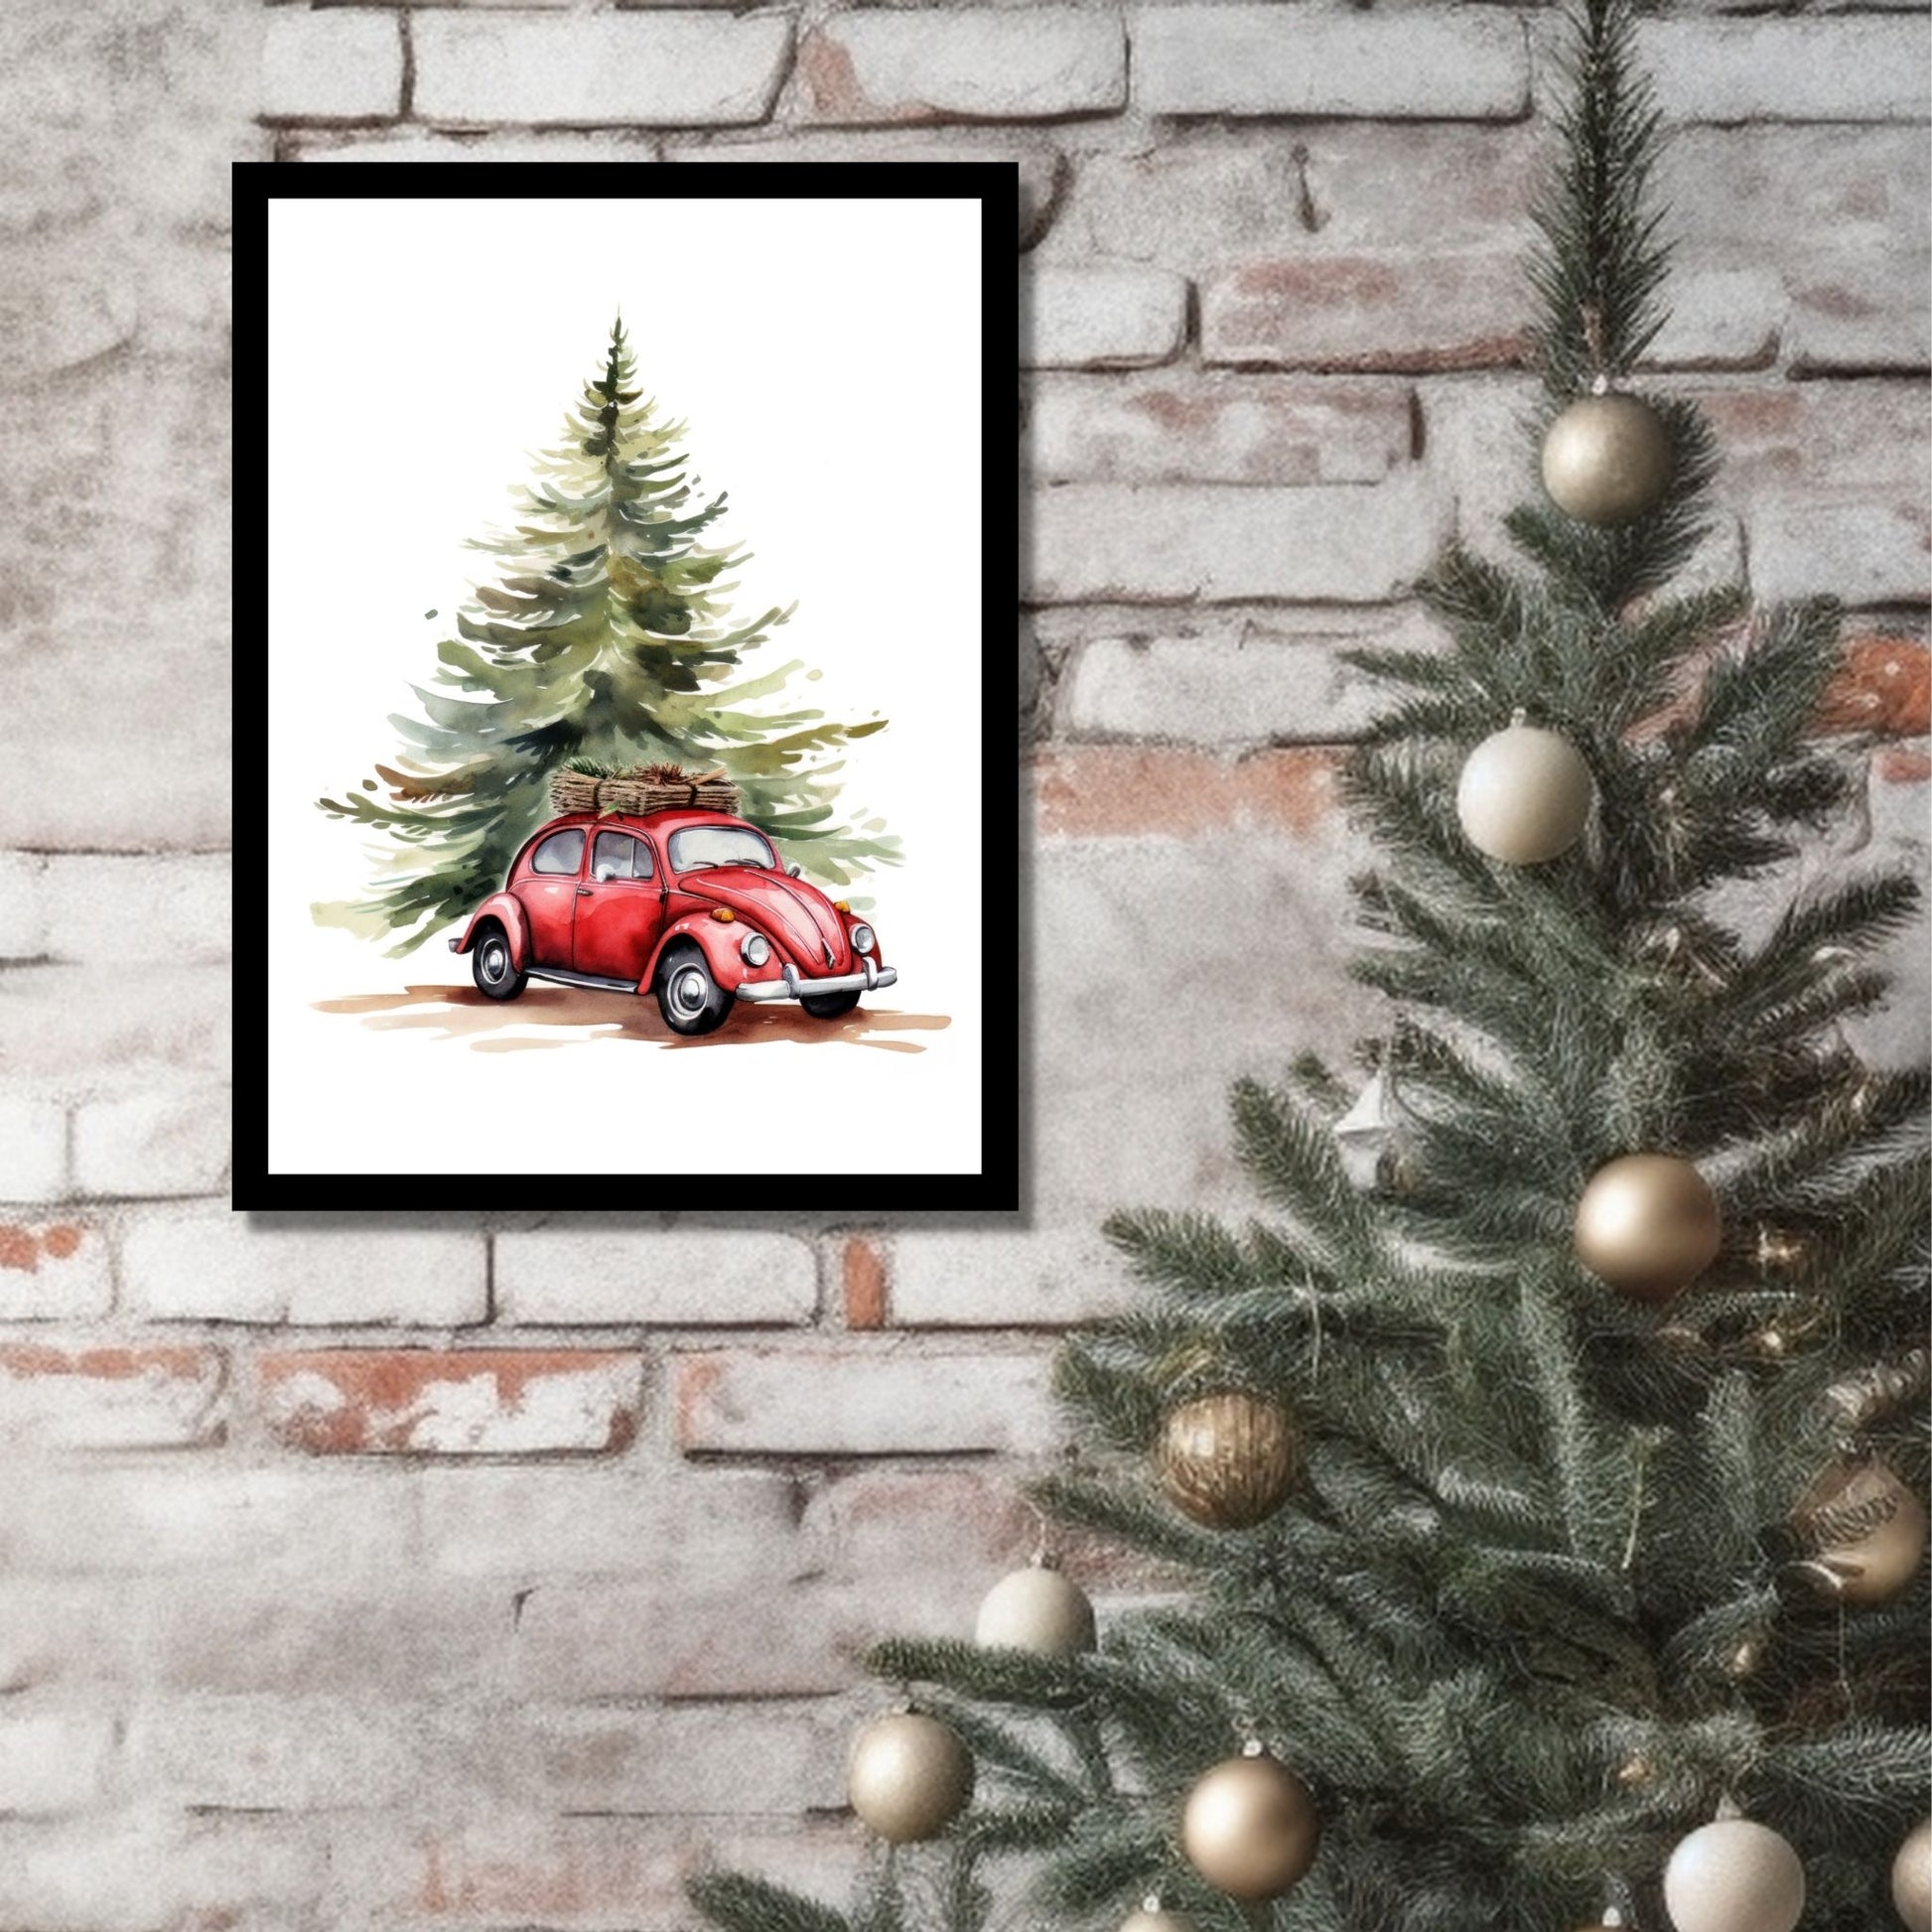 Plakat og lerret med grafisk julemotiv av gammel, rød volkswagen boble. Bilen kjører i en skog, og på taket er den lastet med trekasser. På bildet henger motivet som plakaten i en sort ramme på en murvegg ved siden av et juletre.